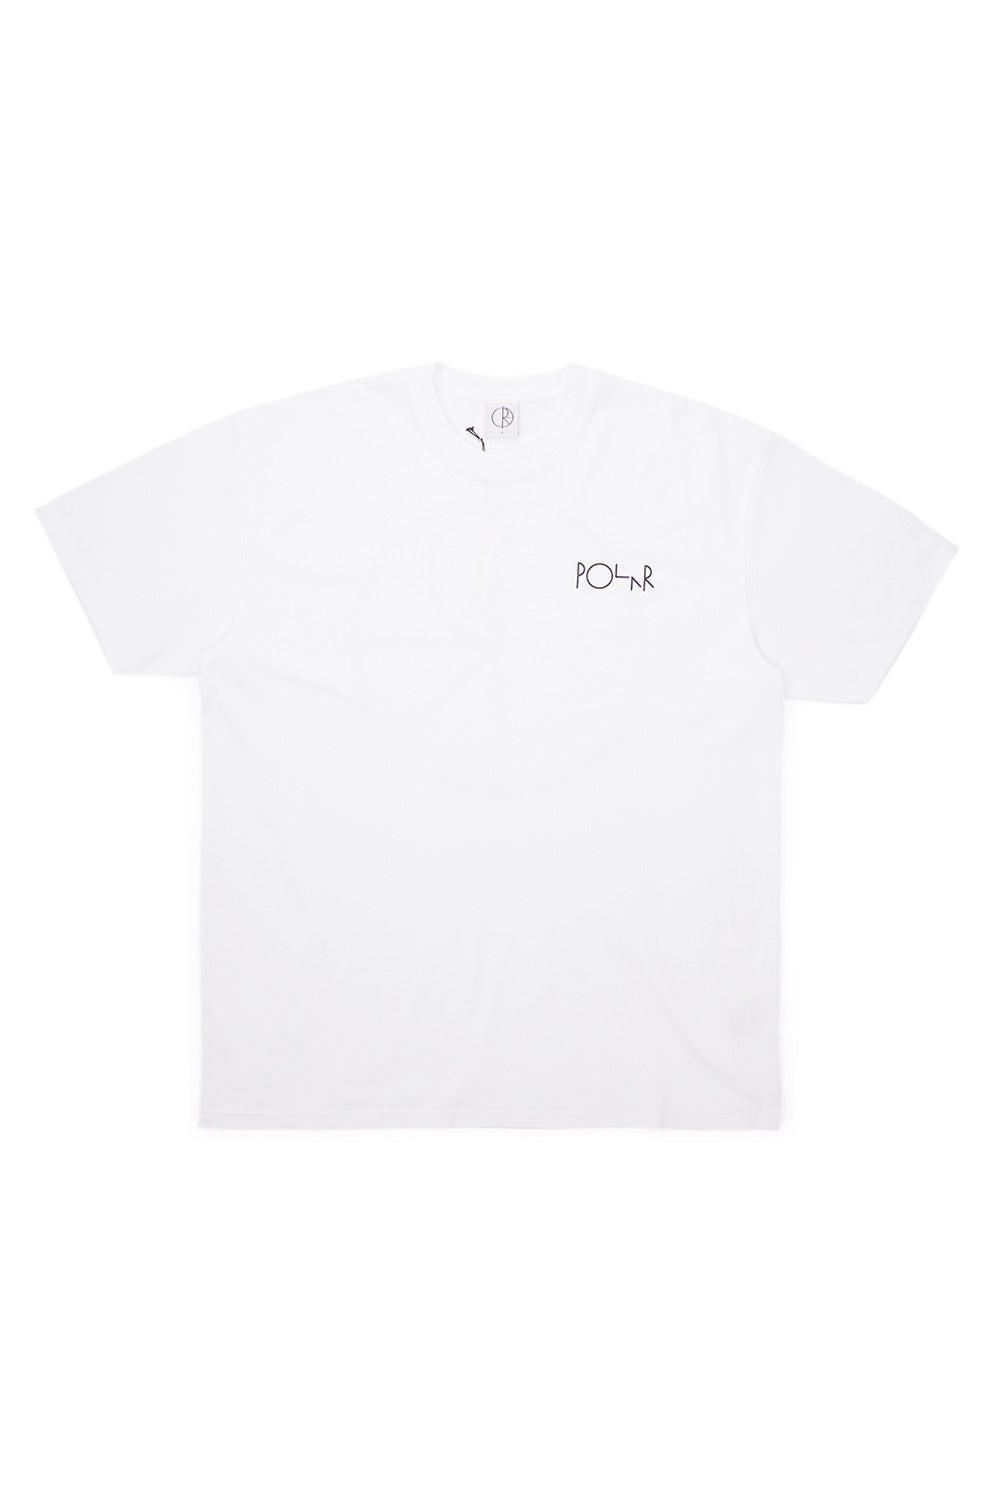 Polar Skate Co. Stroke Logo T-Shirt White - BONKERS